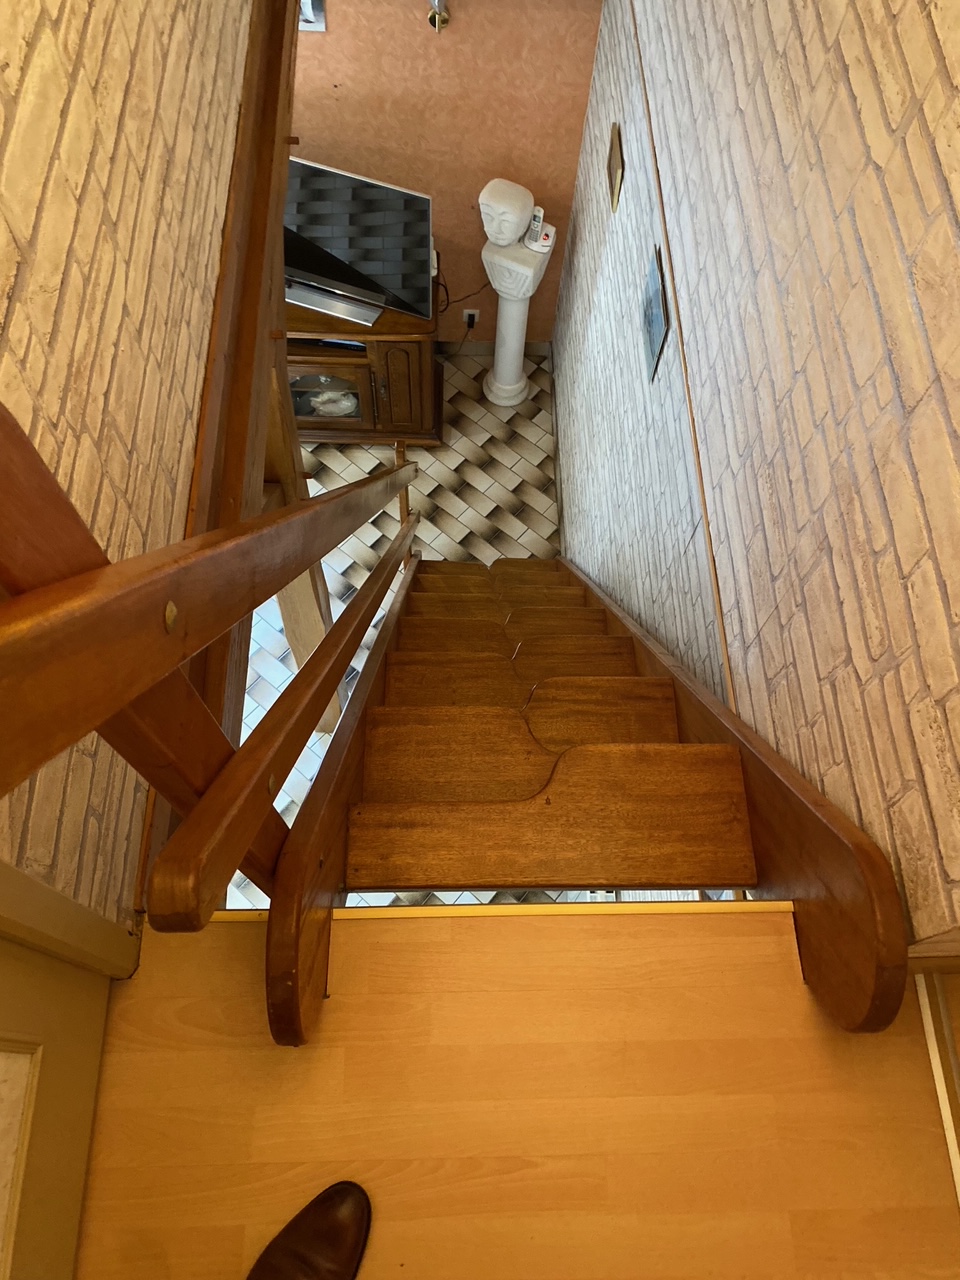 Installation d'un Monte-Escalier dans un escalier très particulier en marche contre balancé, c'est une Monte-Escalier droit modèle HANDICARE 1000 - Photo 2